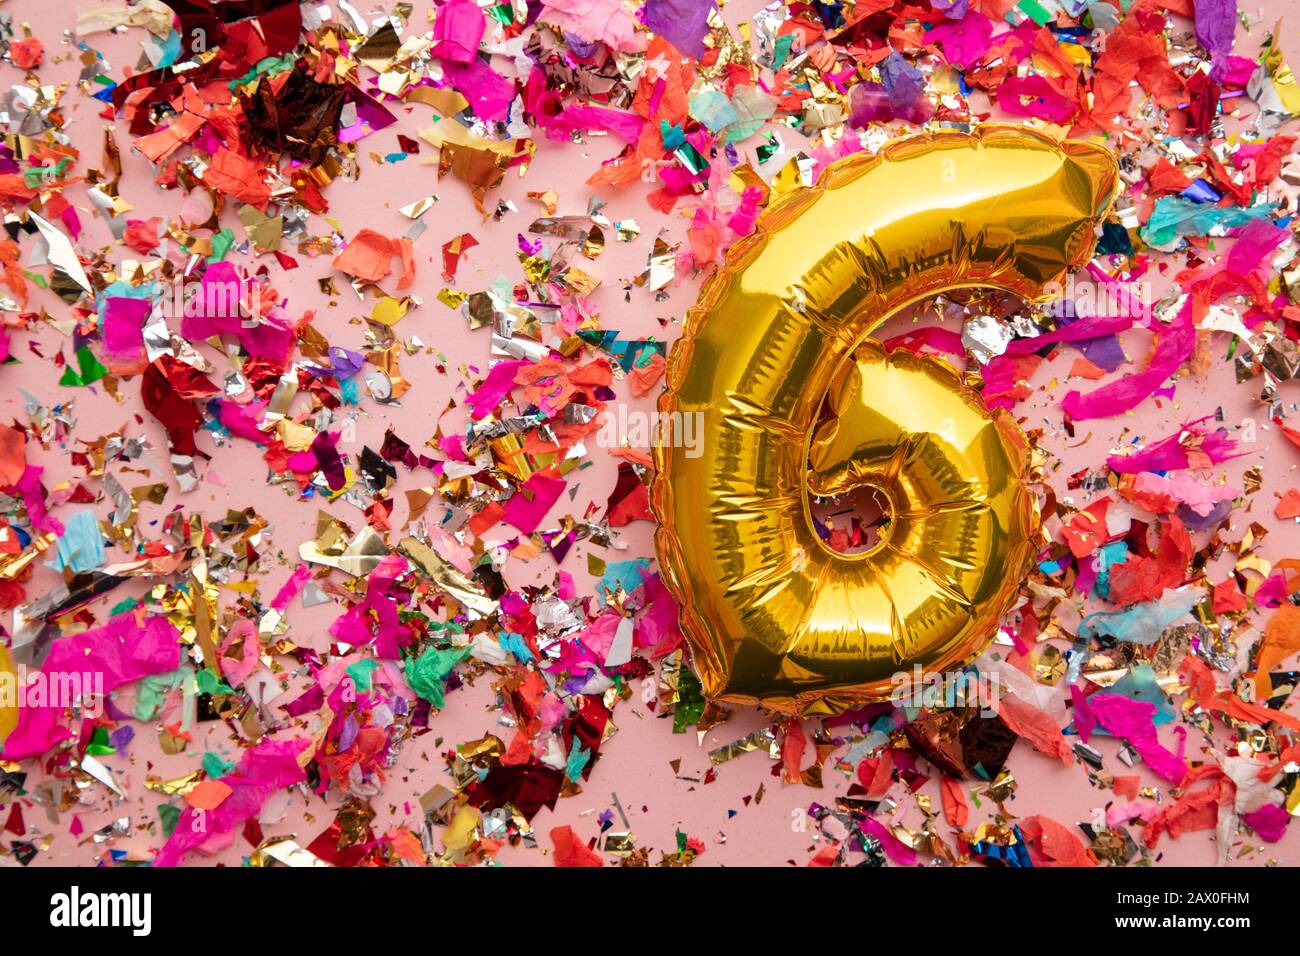 https://c8.alamy.com/compit/2ax0fhm/numero-6-oro-compleanno-palloncino-celebrazione-su-uno-sfondo-confetti-glitter-2ax0fhm.jpg